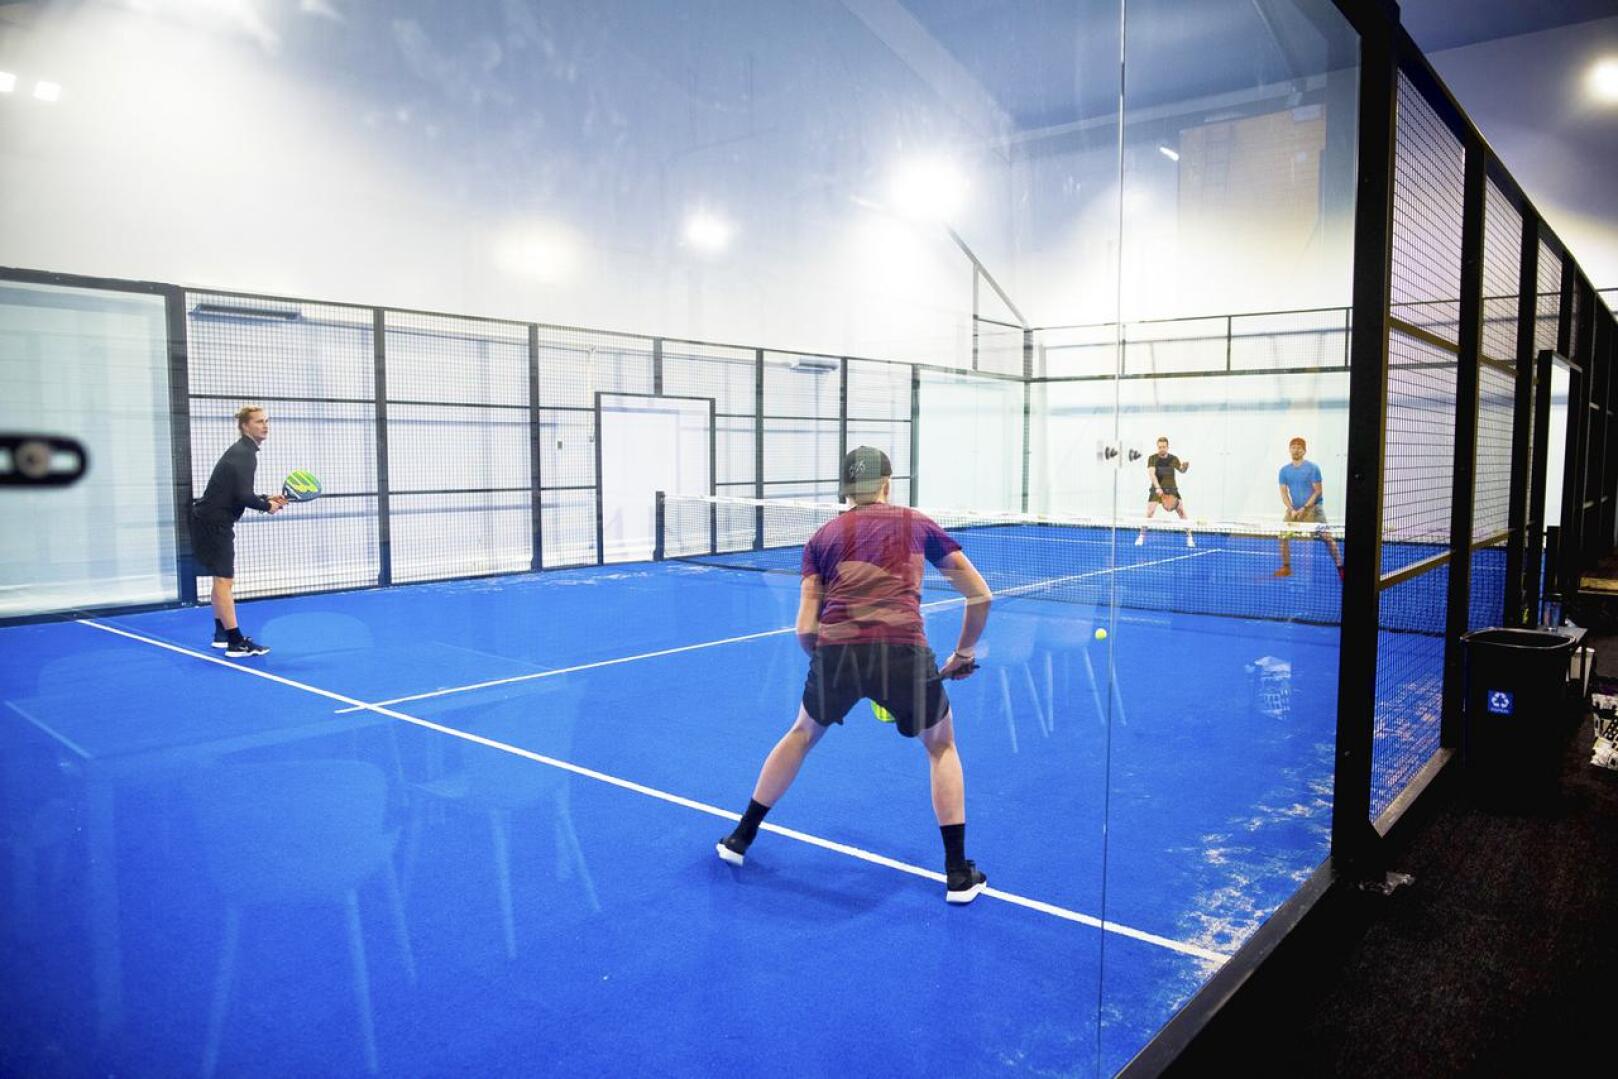 Padel on tenniksen ja squashin välimuotoa muistuttava mailapeli. Sitä pelataan tavallisesti nelinpelinä, mutta myös kaksinpeli on mahdollista.